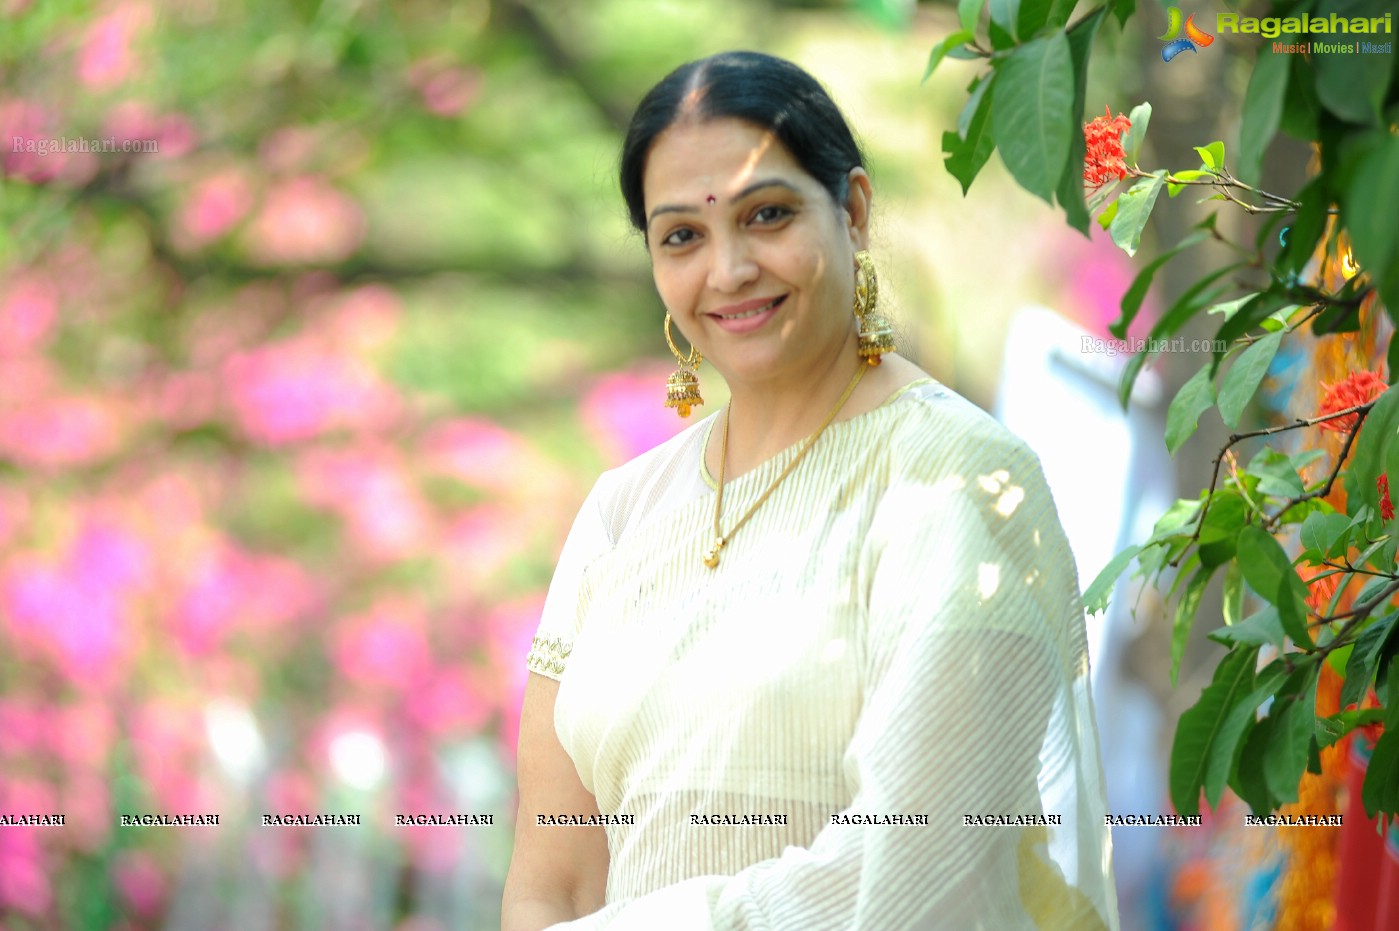 Jayalalitha Telugu Actress , HD Wallpaper & Backgrounds